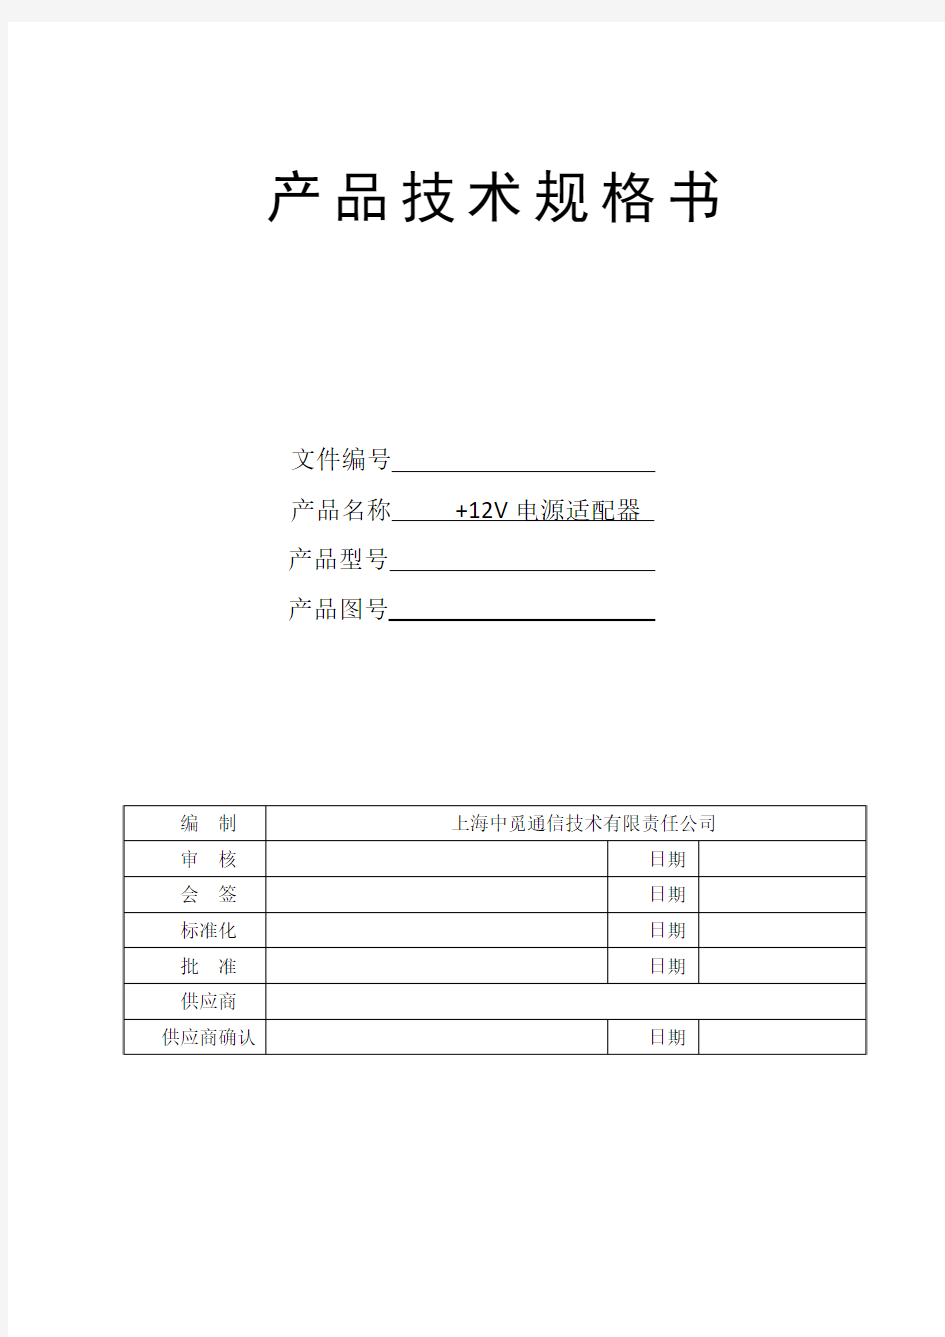 12V电源适配器技术规格书-201403101600